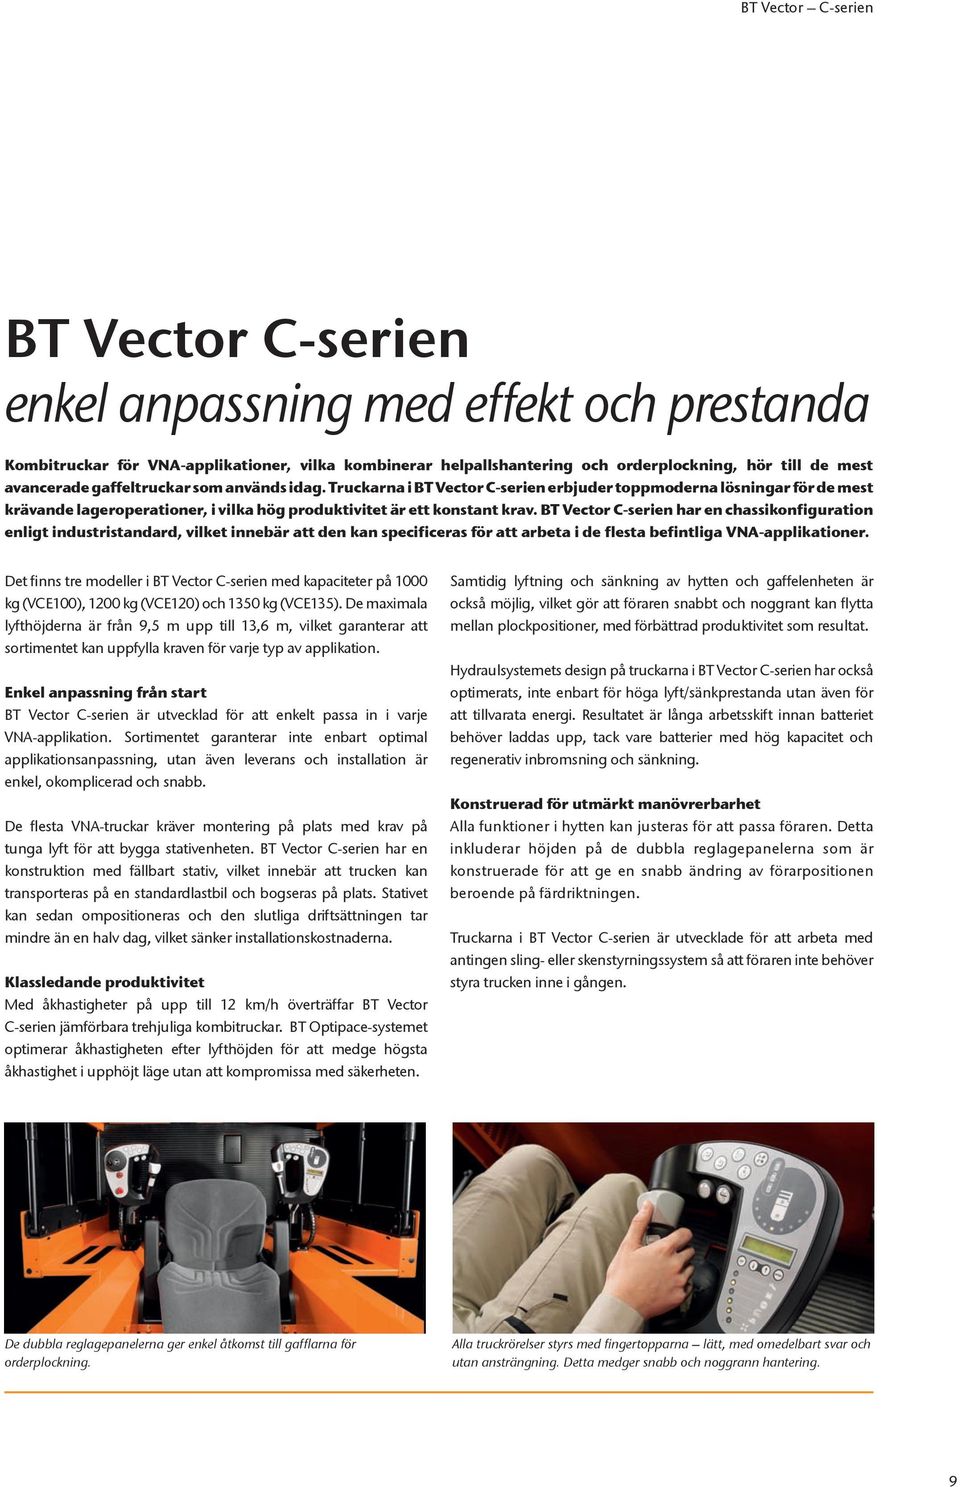 BT Vector C-serien har en chassikonfiguration enligt industristandard, vilket innebär att den kan specificeras för att arbeta i de flesta befintliga VNA-applikationer.